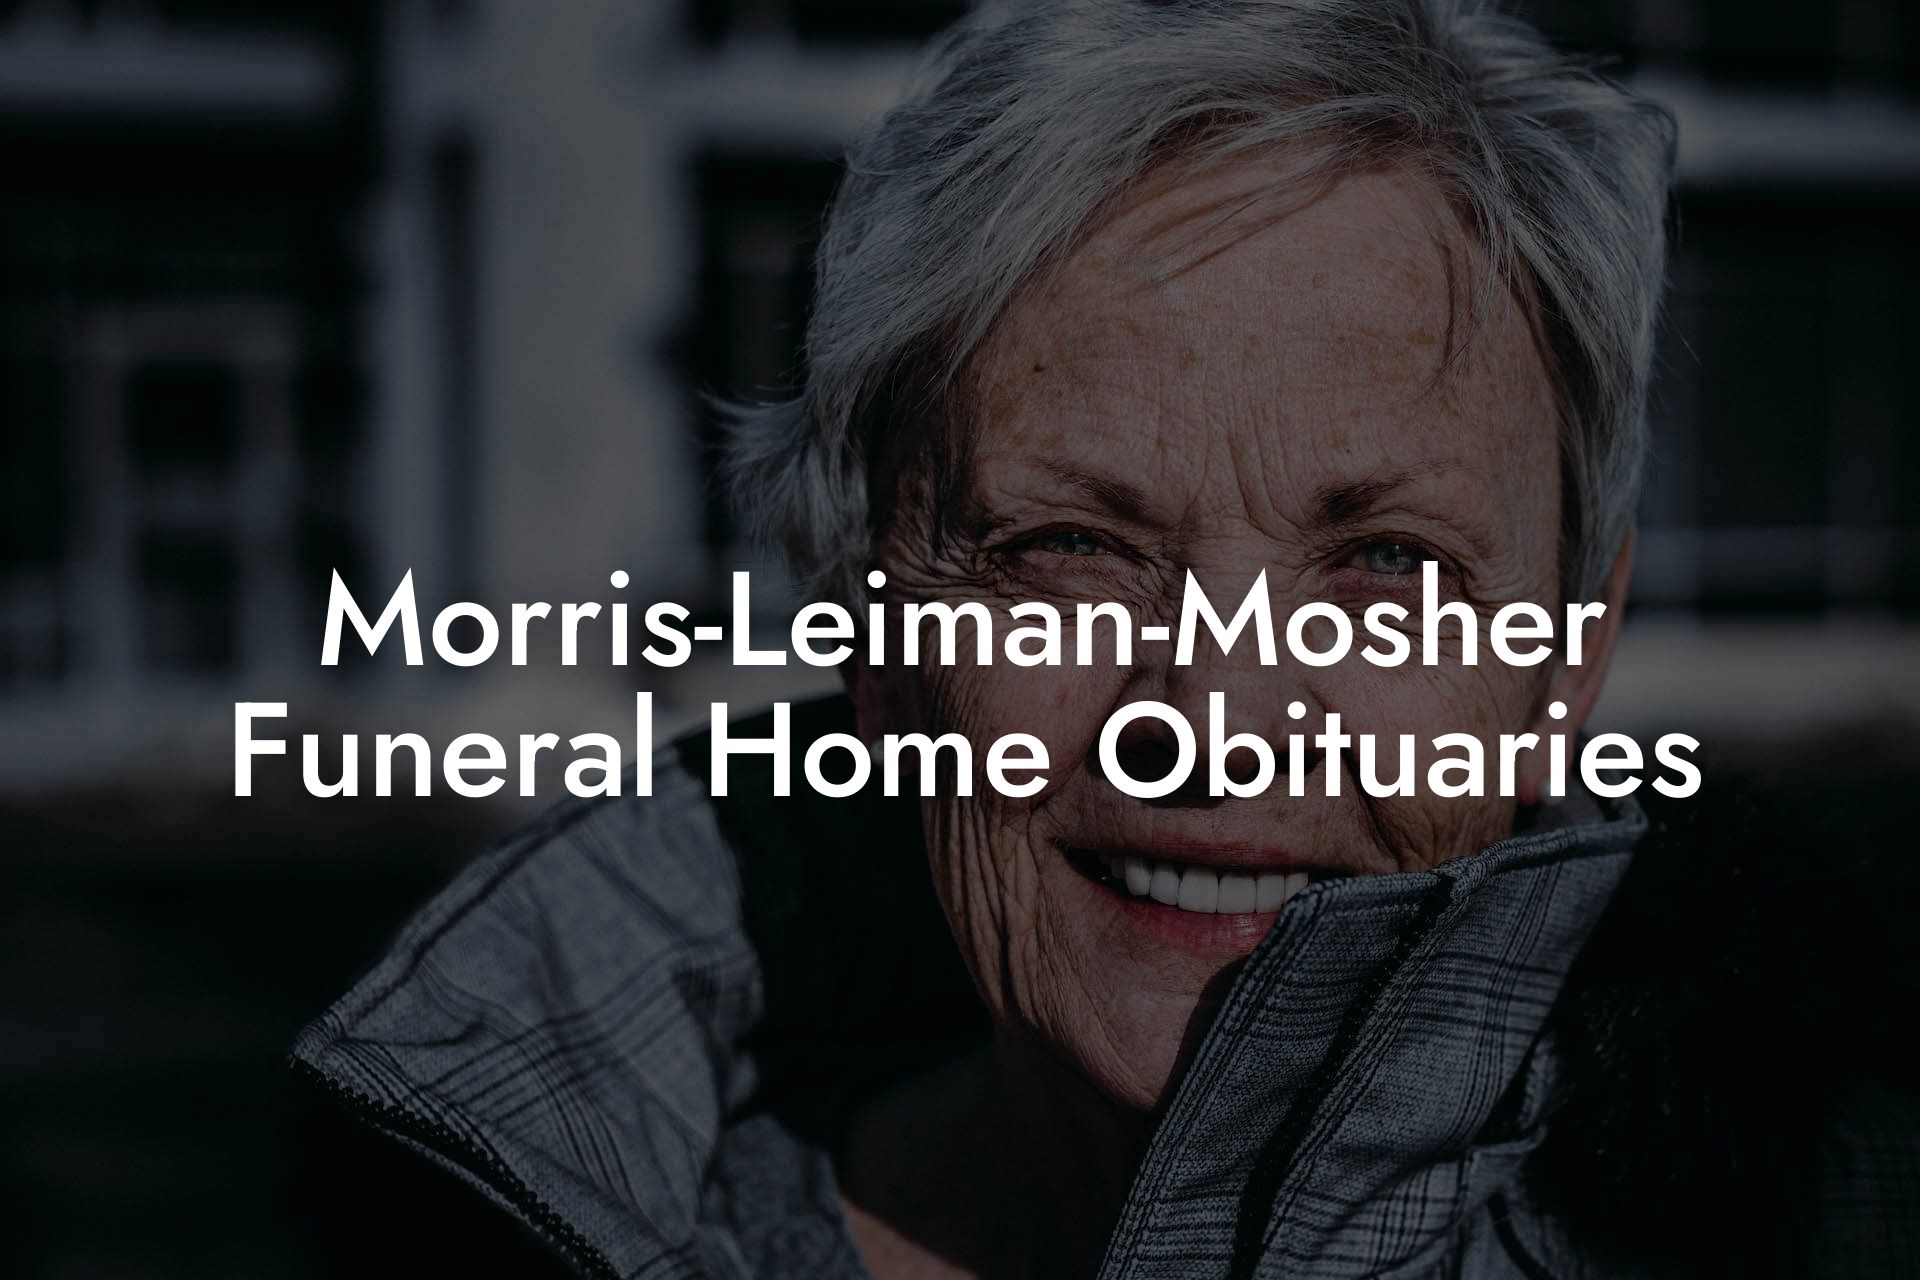 Morris-Leiman-Mosher Funeral Home Obituaries